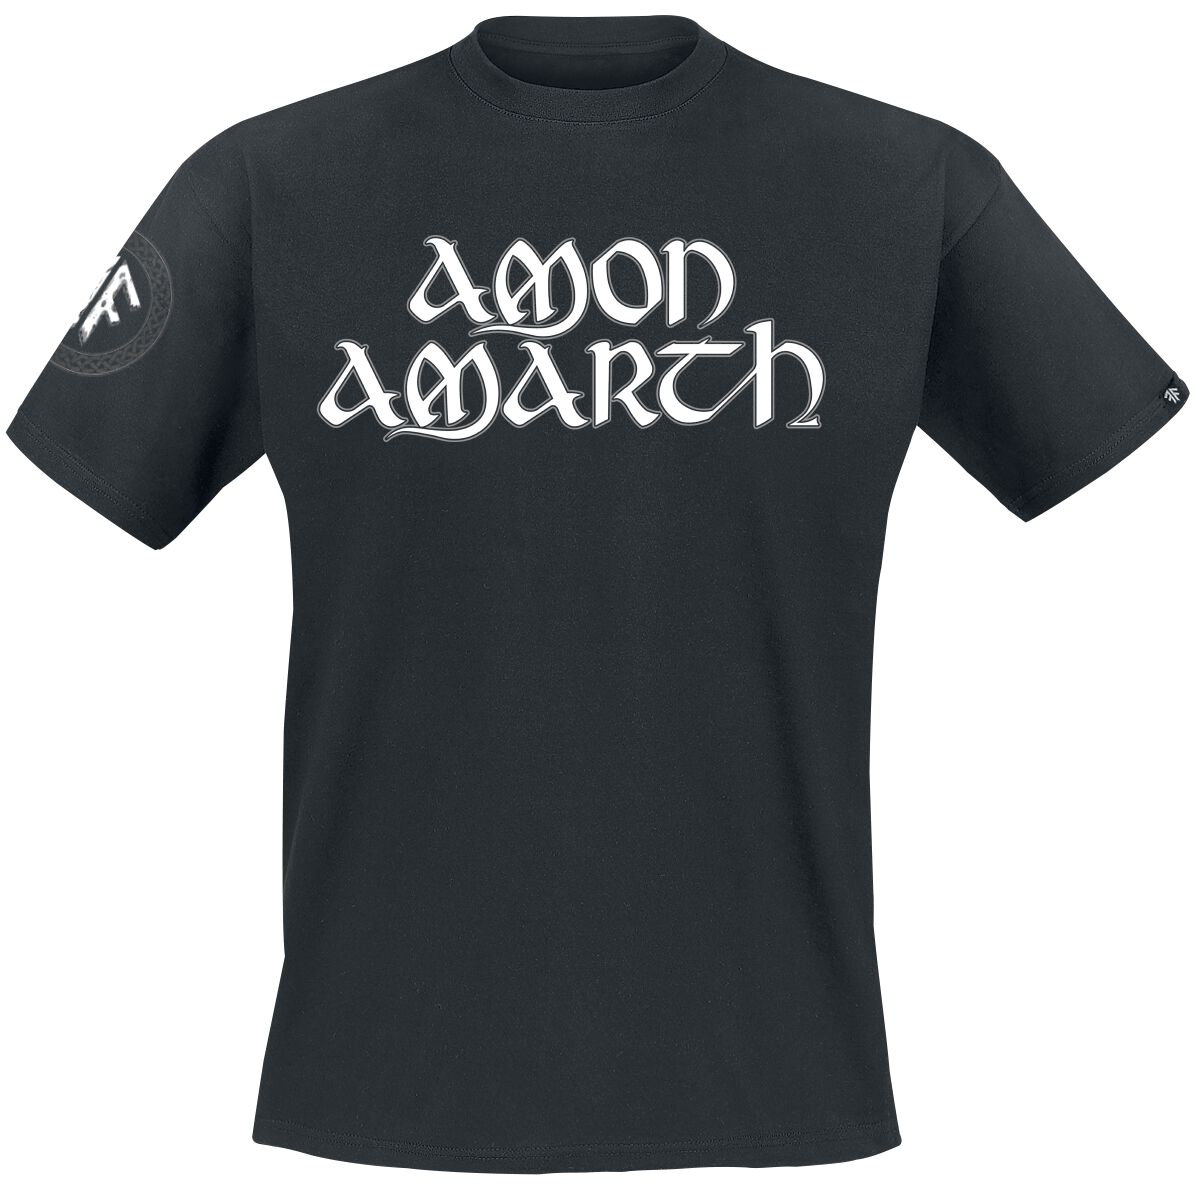 Amon Amarth T-Shirt - Mjoelner - S bis XXL - für Männer - Größe L - schwarz  - EMP exklusives Merchandise!